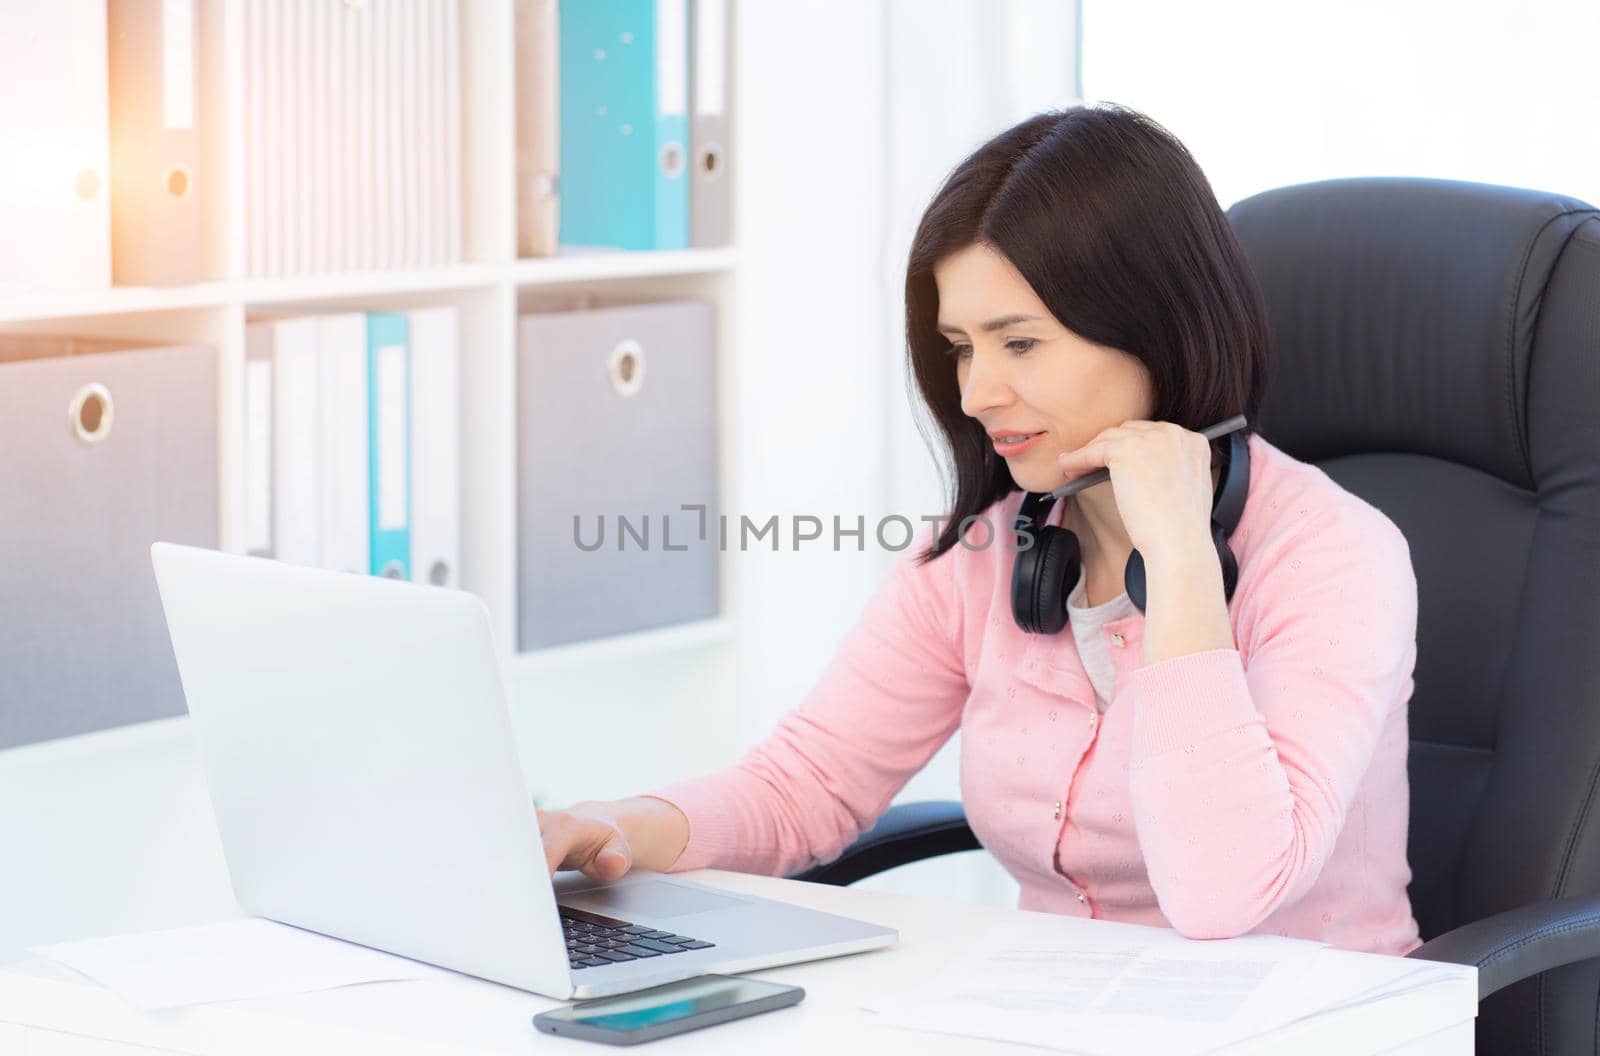 Pretty woman working on laptop in modern office